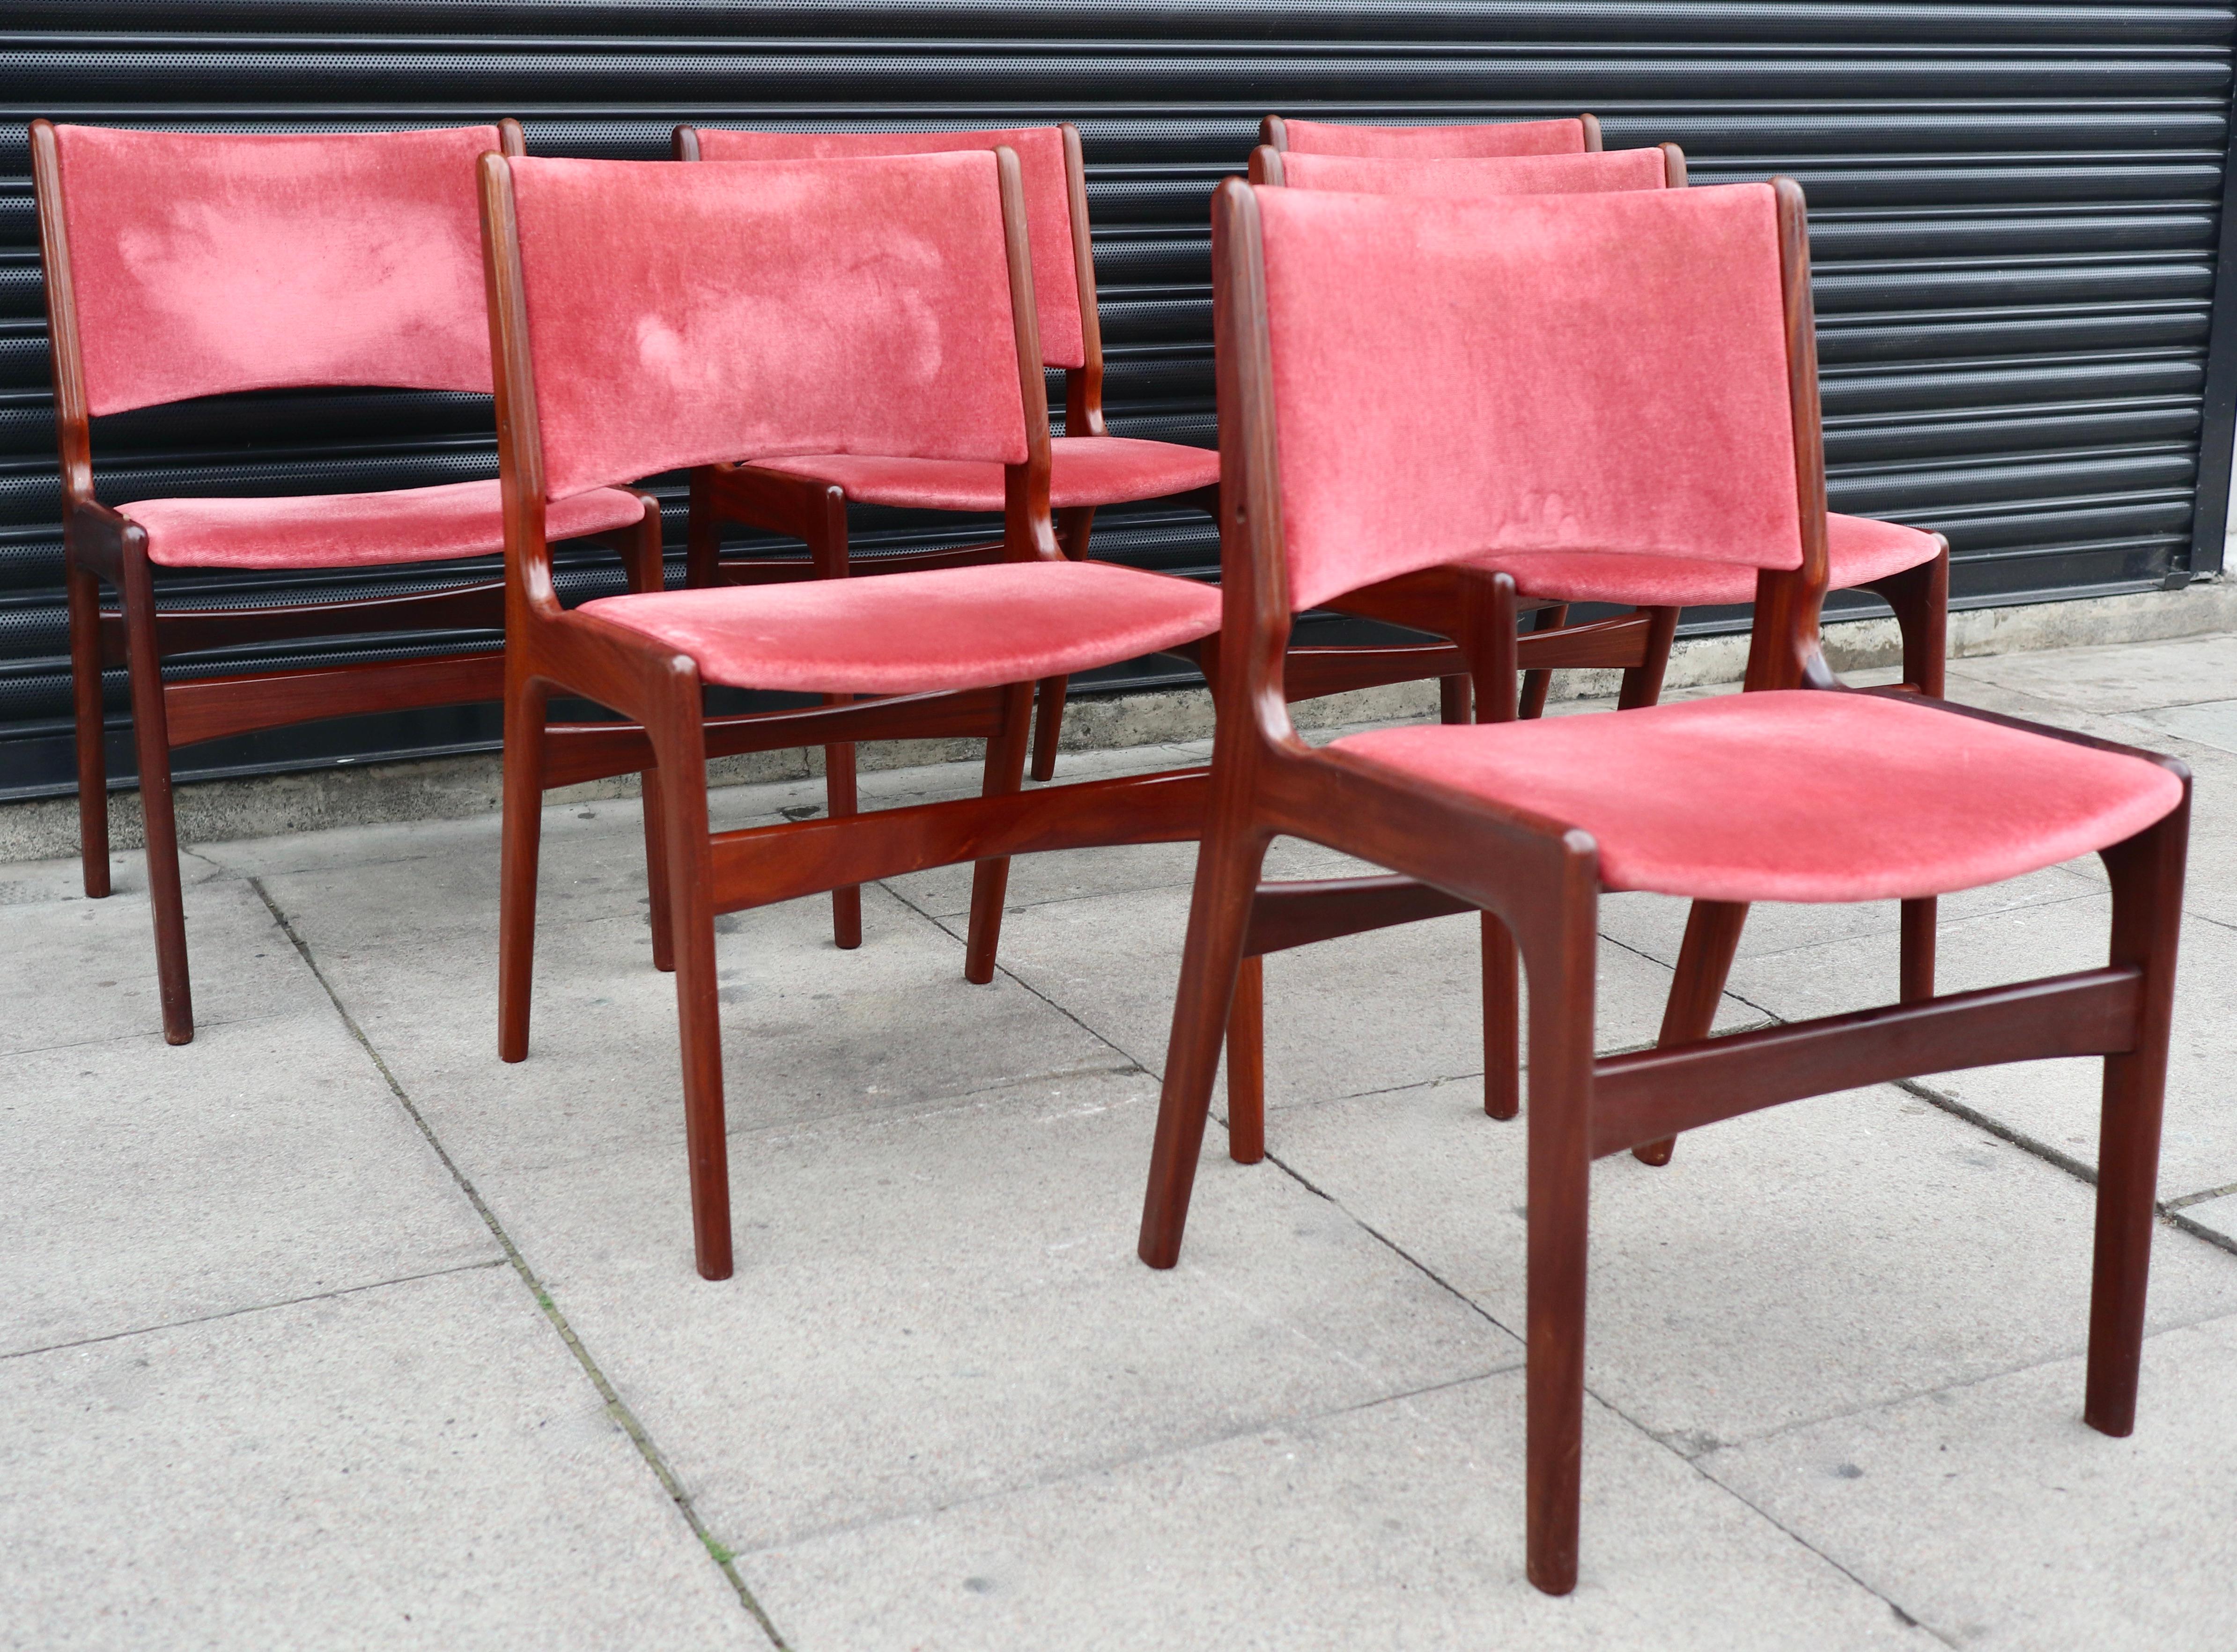 Ein stilvoller und seltener Satz von sechs dänischen Esszimmerstühlen des Modells 89 aus massivem Teakholz mit originalen rosa/roten Velourstoffbezügen.  Diese von Erik Buch für povl Dinesen entworfenen Esszimmerstühle verfügen über eine